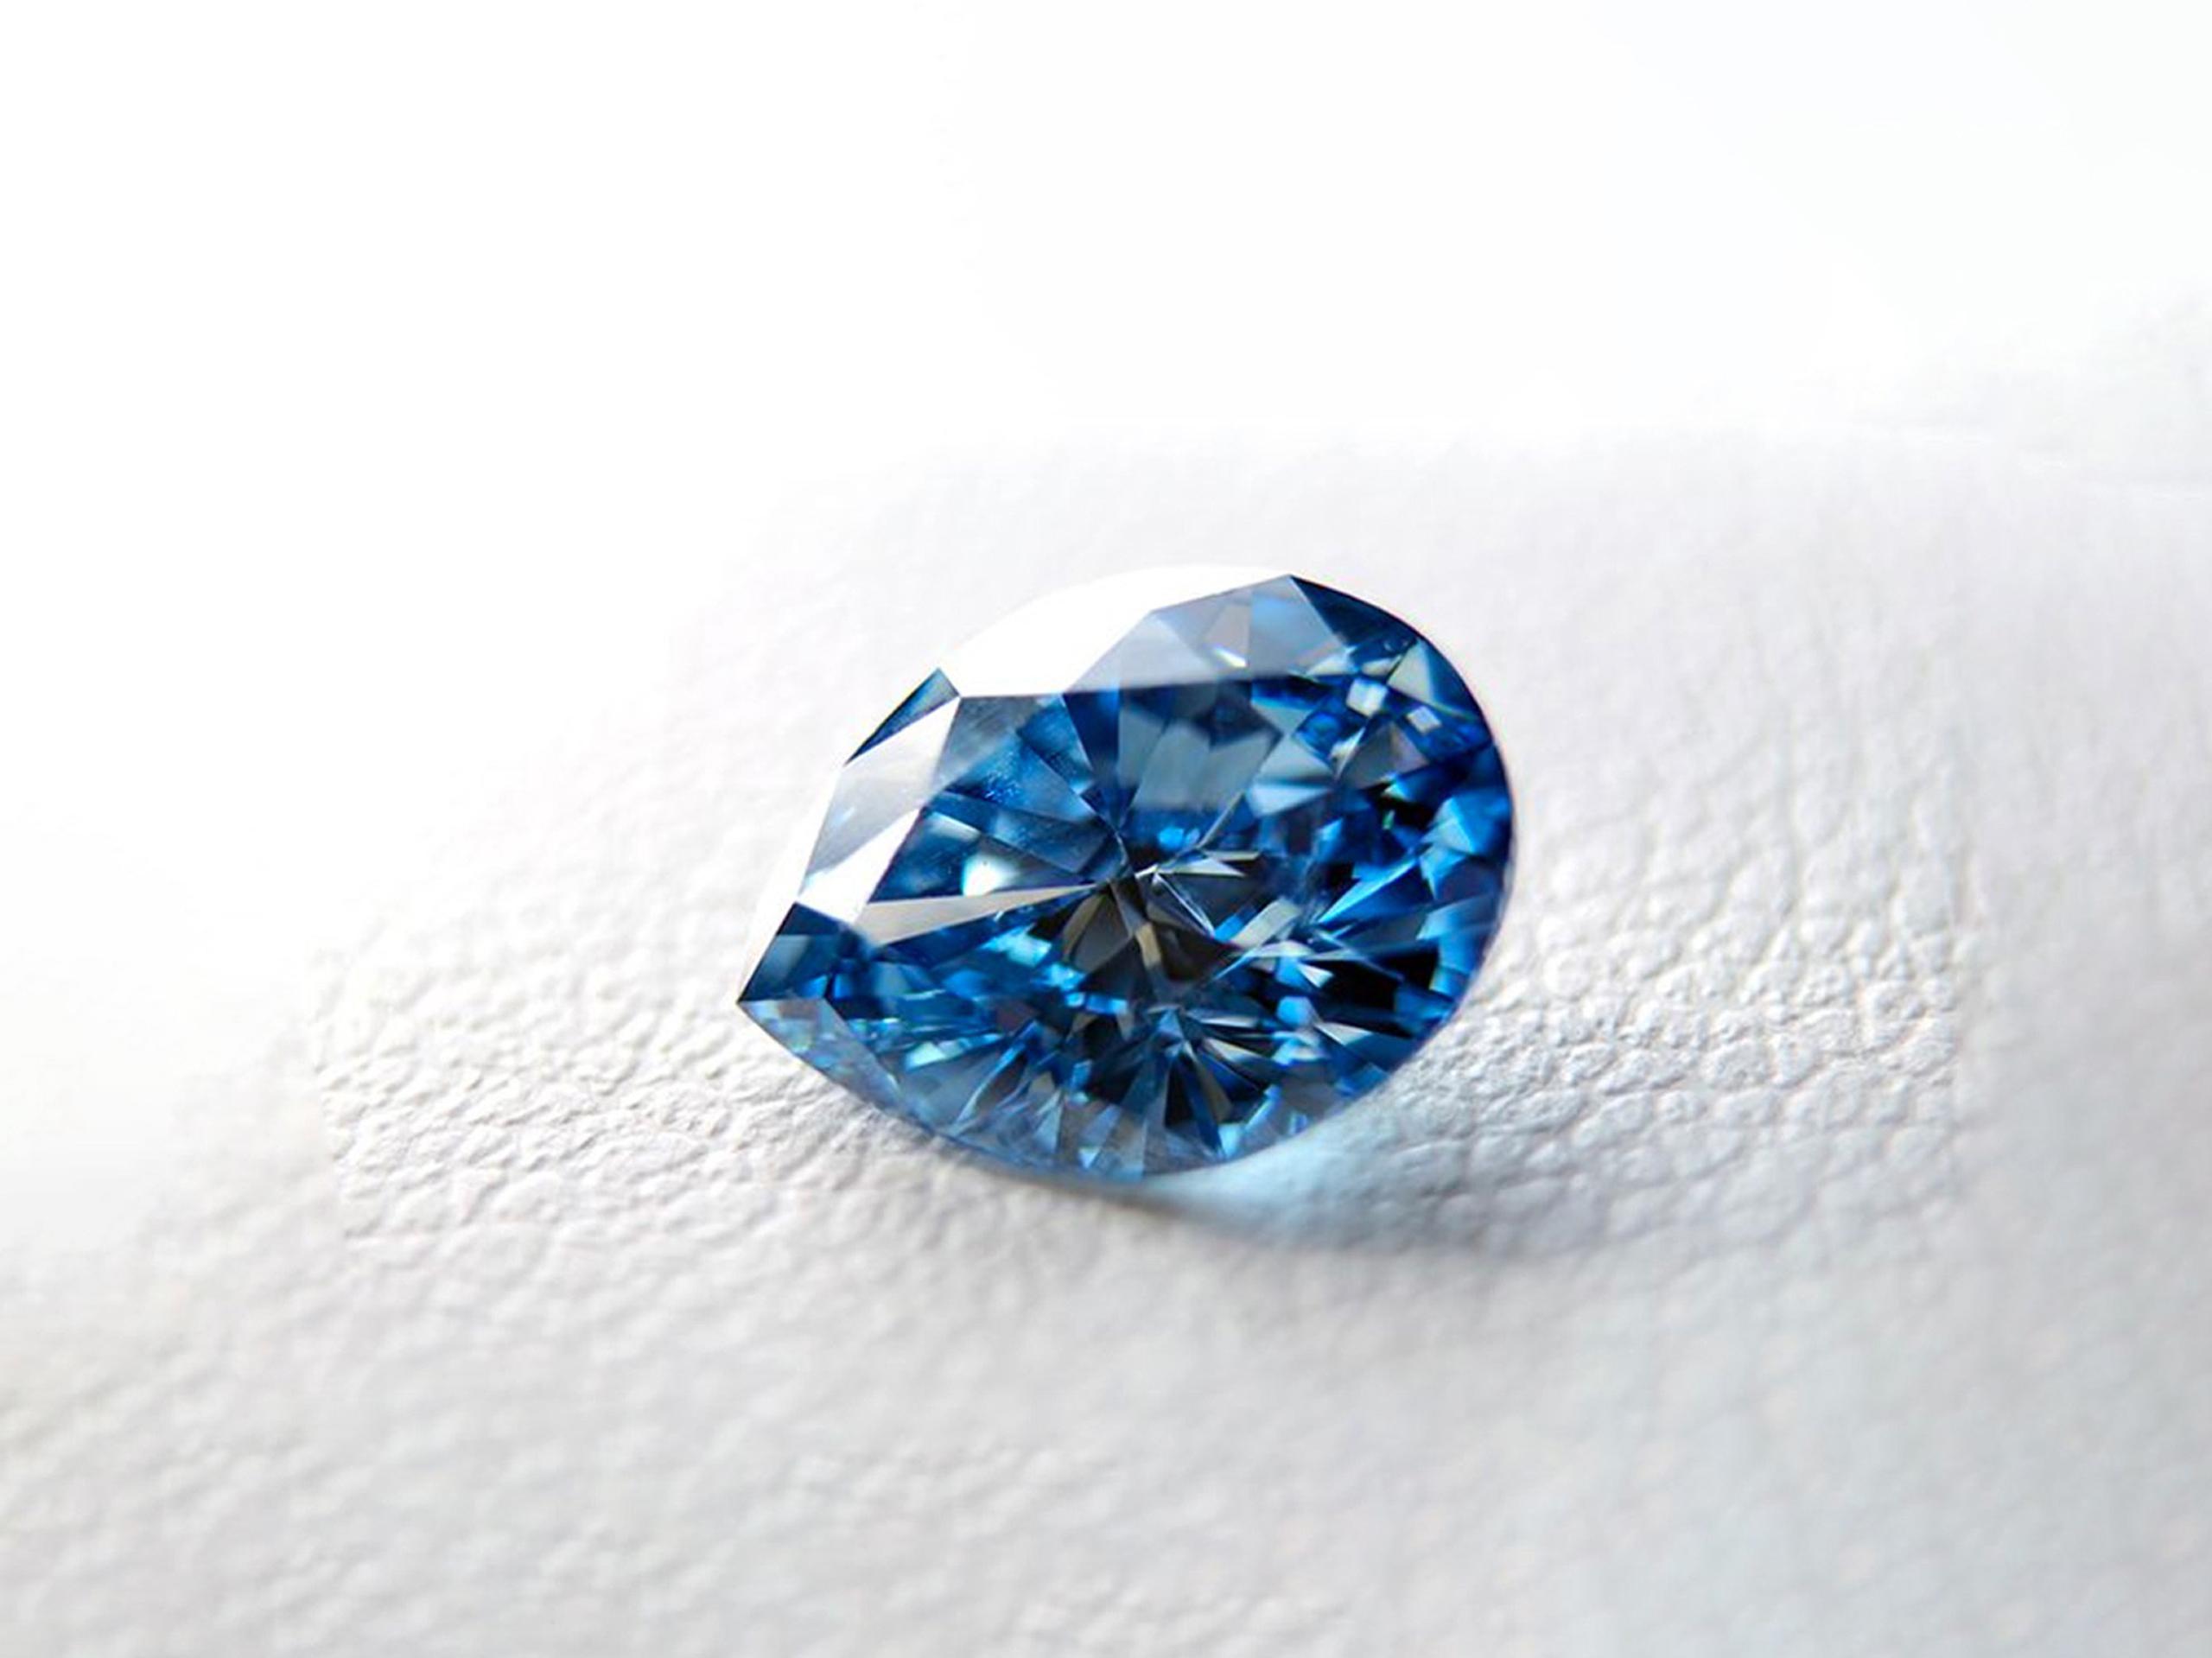 Los diamantes van desde los 3,900 hasta los 32,000 euros, dependiendo de los quilates, si son en bruto o según los distintos tipos de corte. Imagen facilitada de un diamante fabricado a partir de cenizas de un difunto.